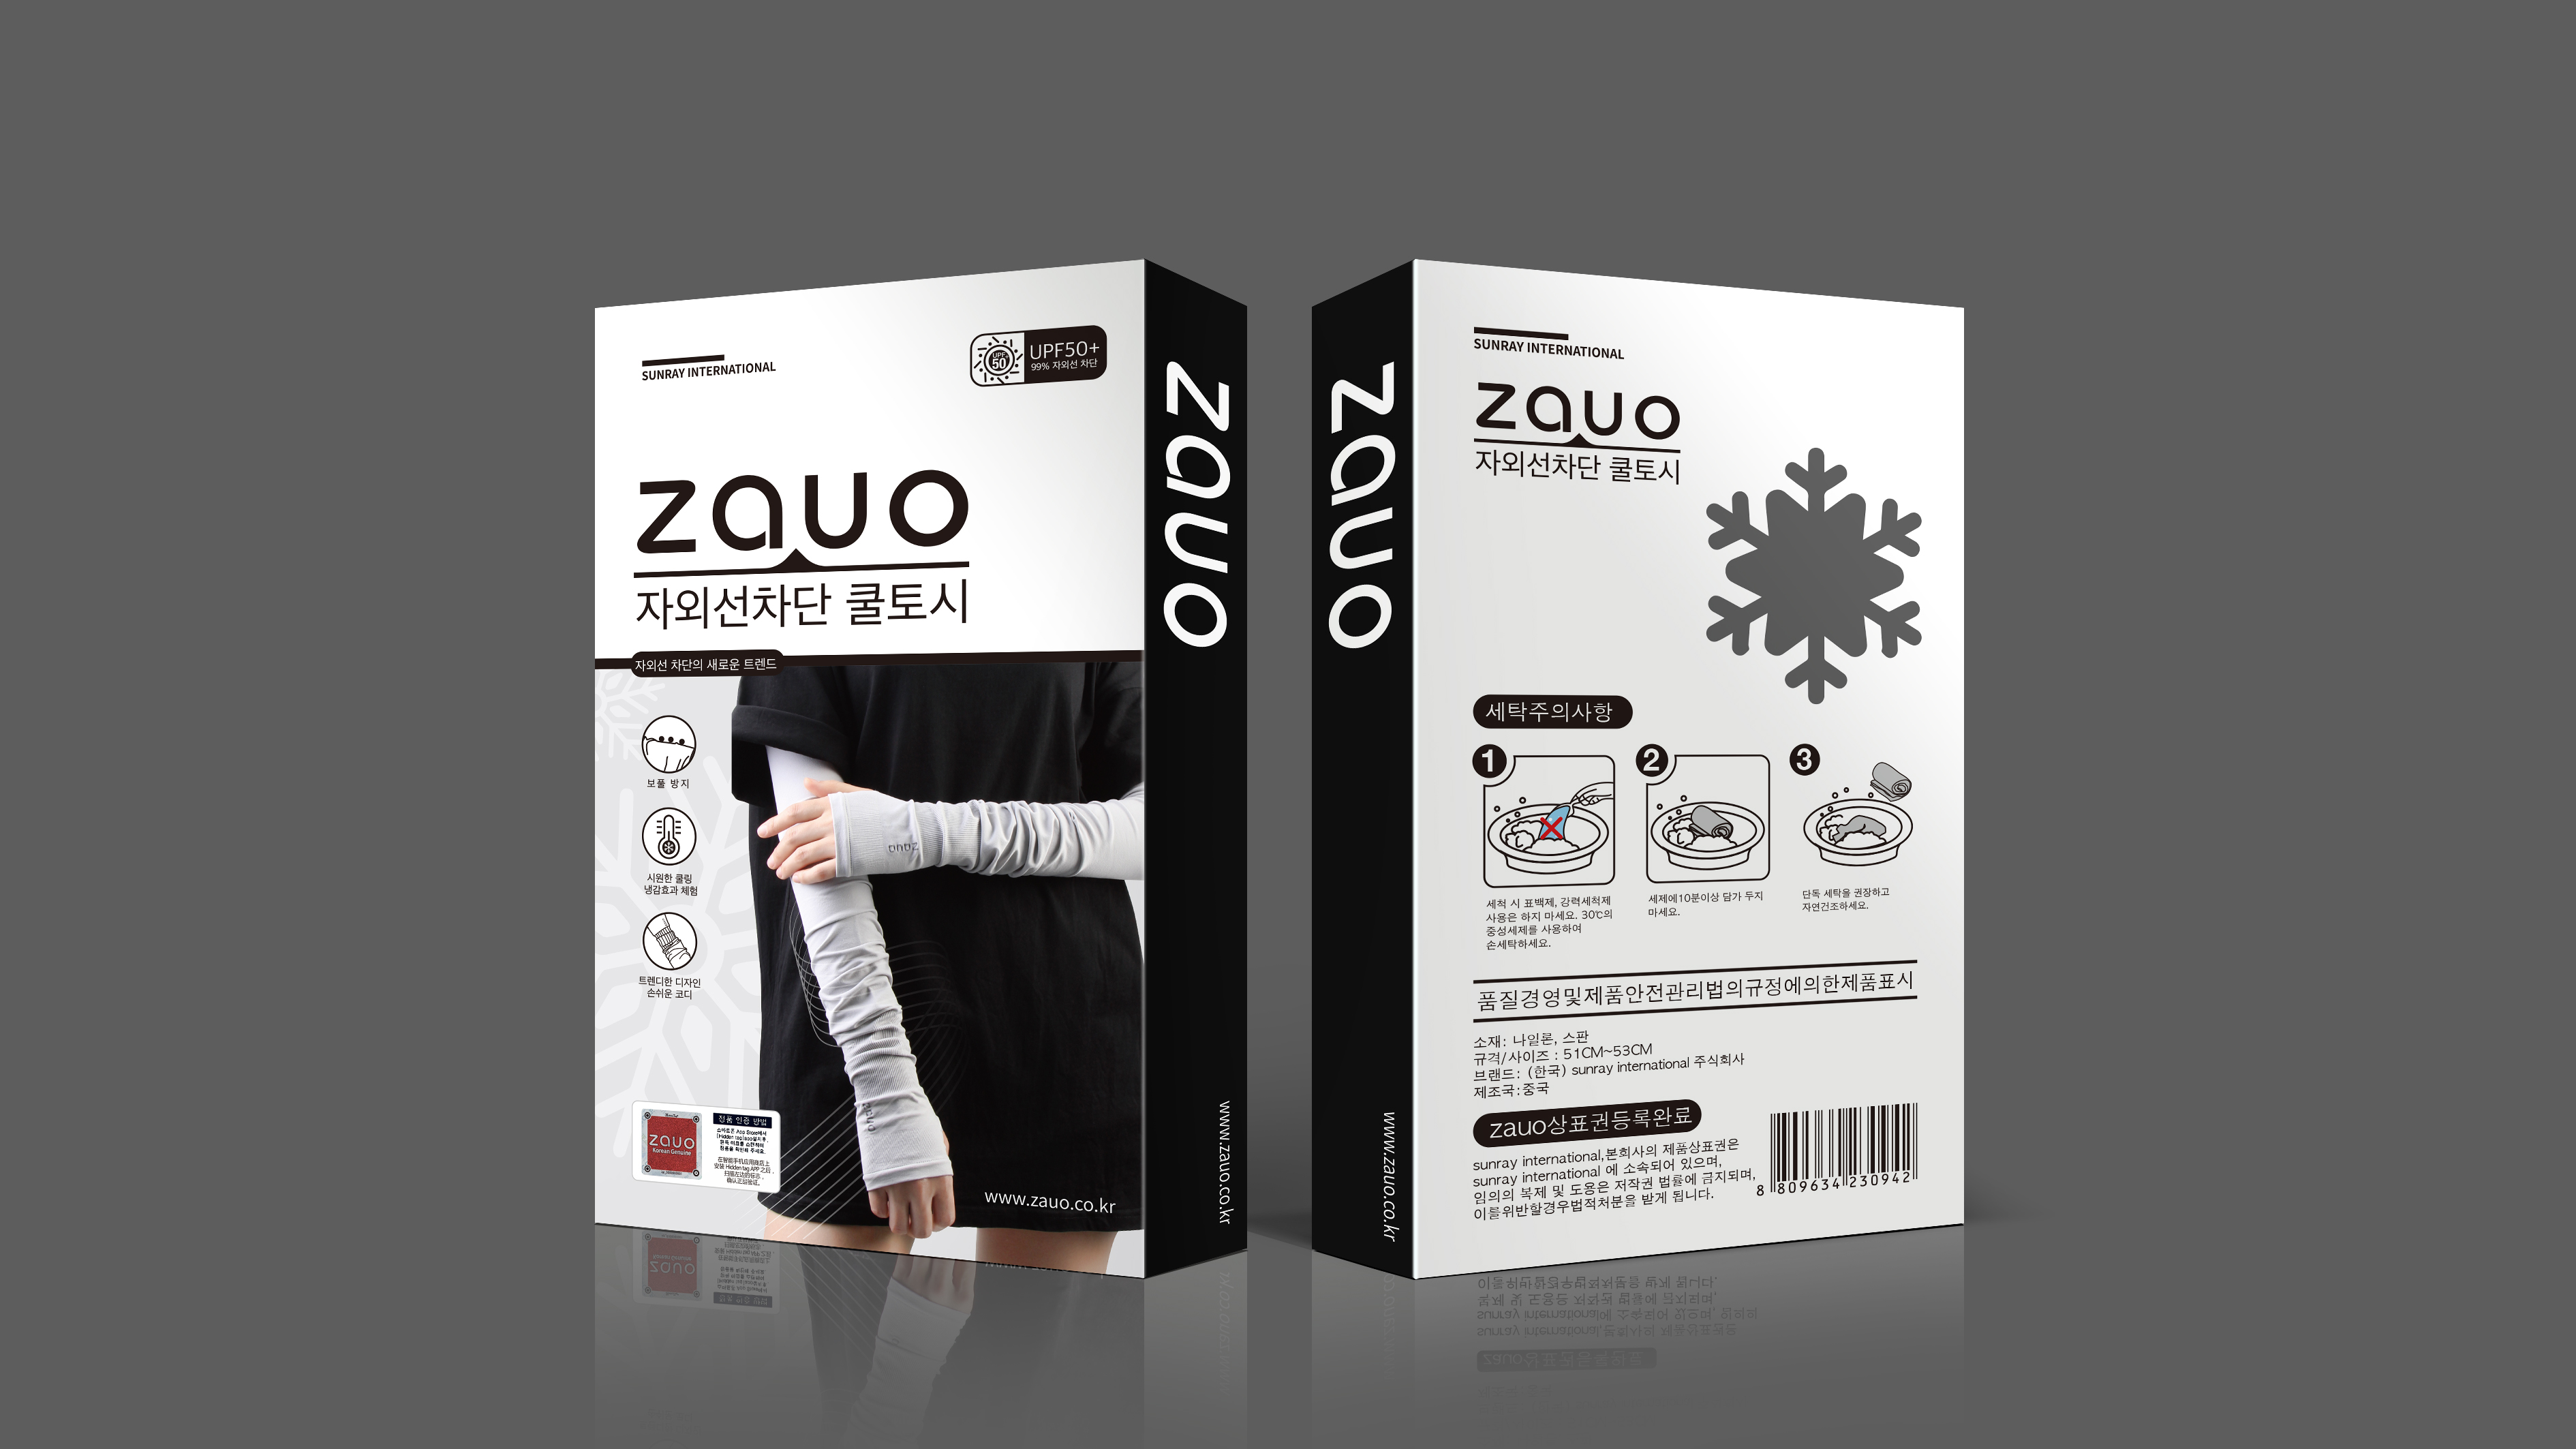 zauo瘦腿襪品牌包裝設計